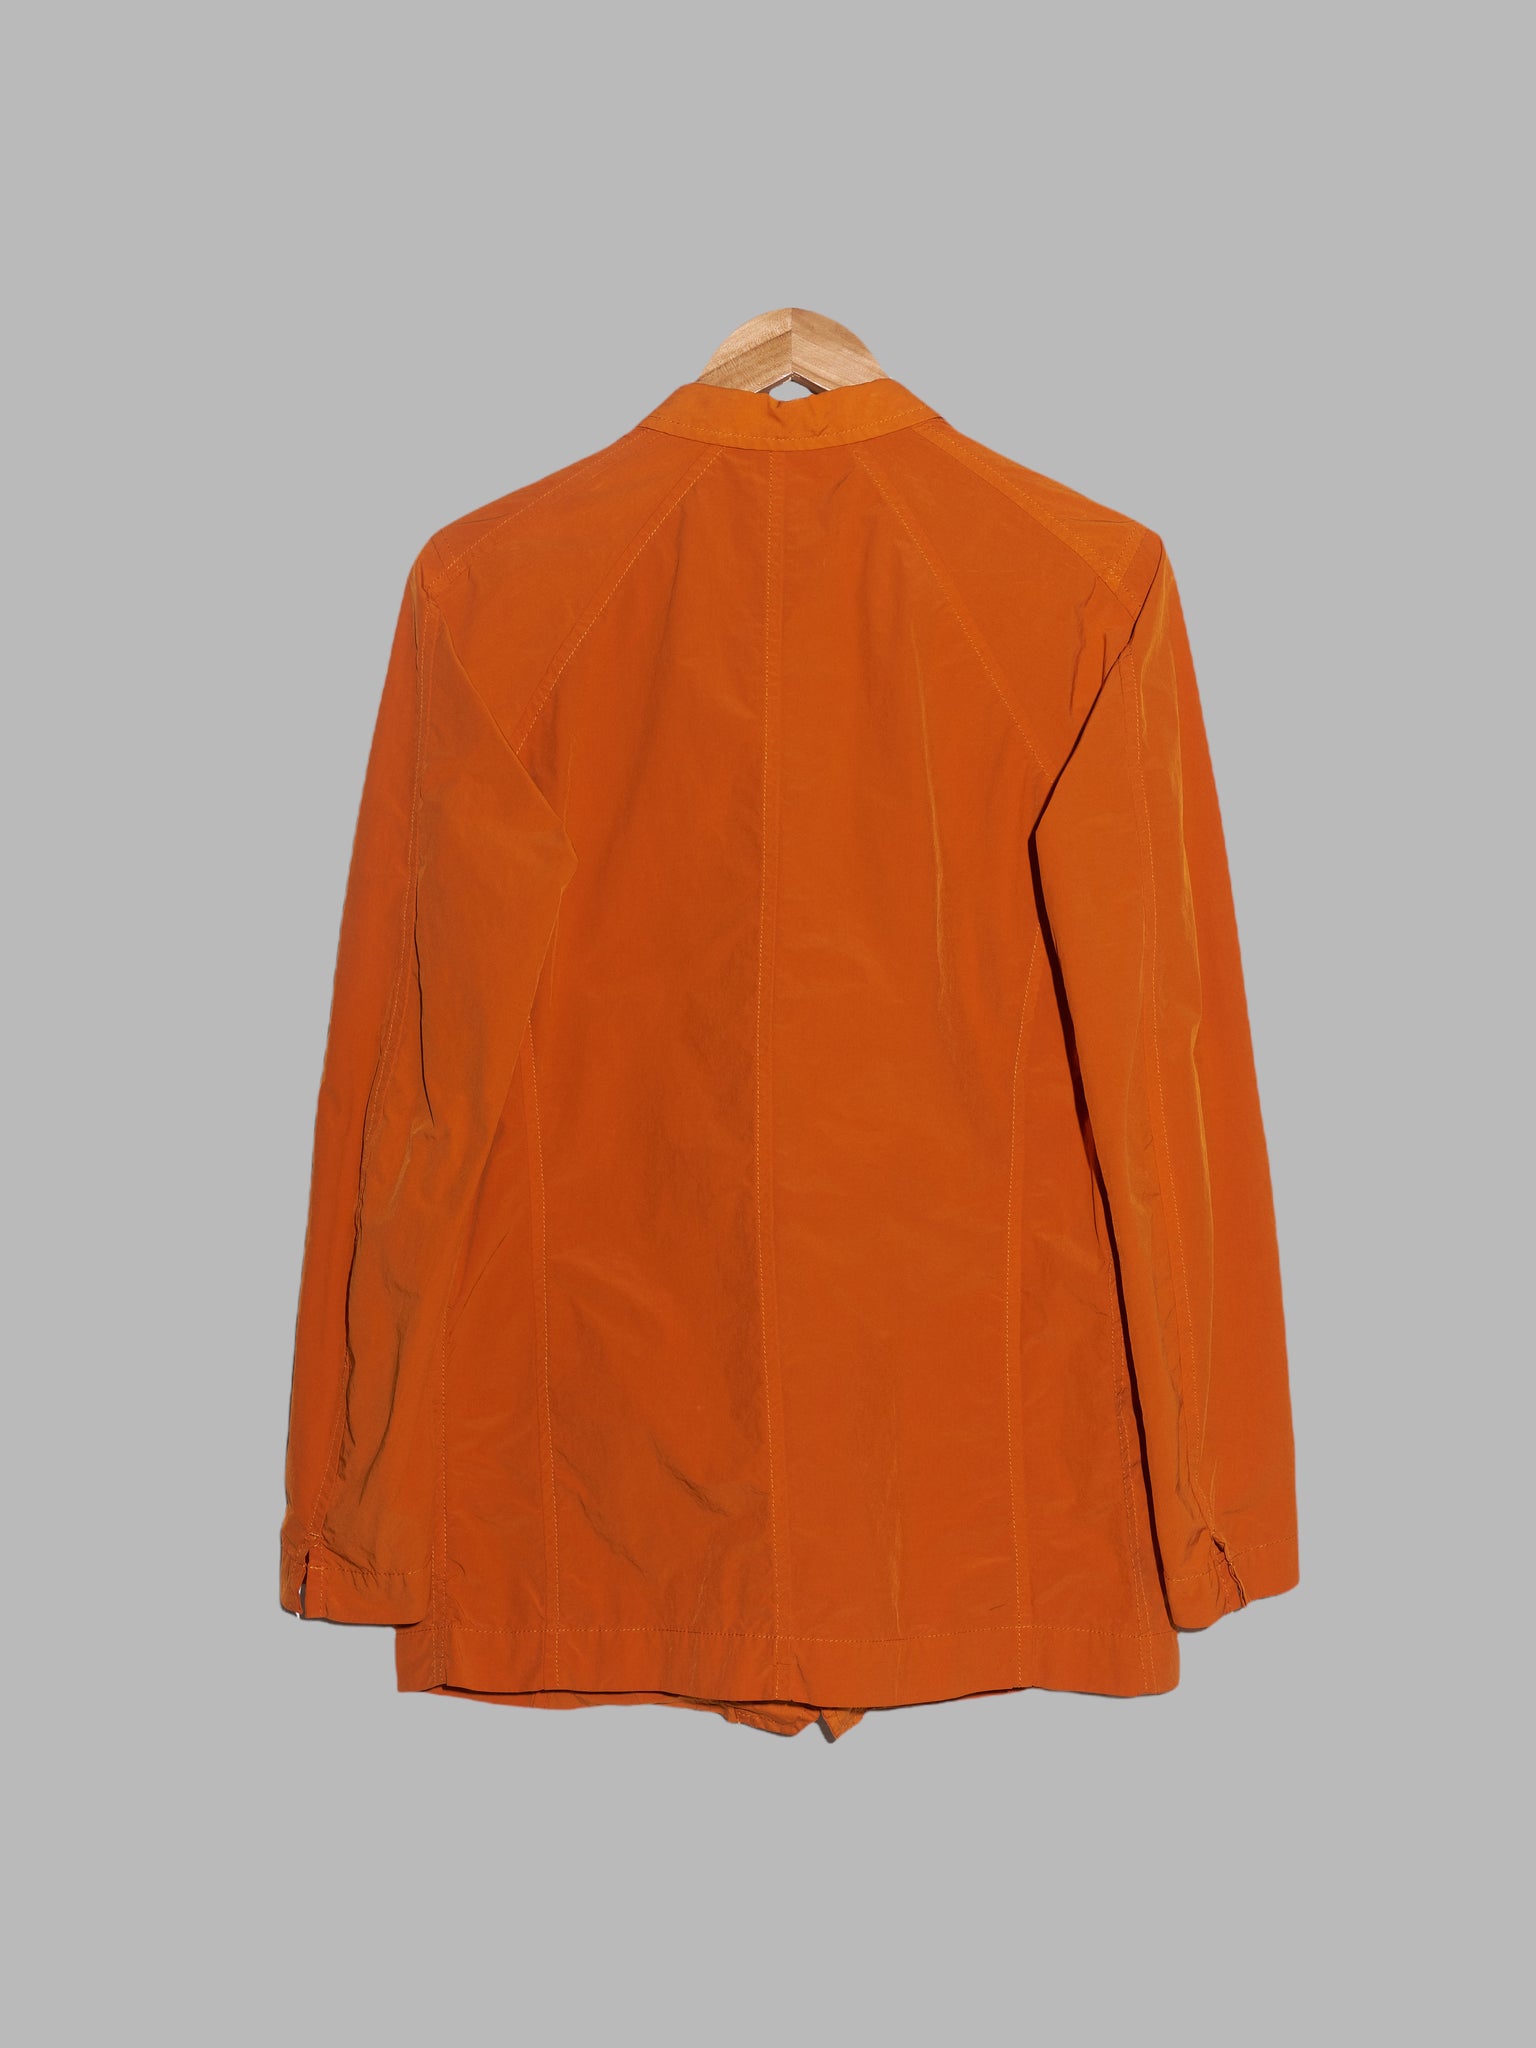 The Viridi-Anne orange poly nylon taffeta three button blazer - size 2 S XS